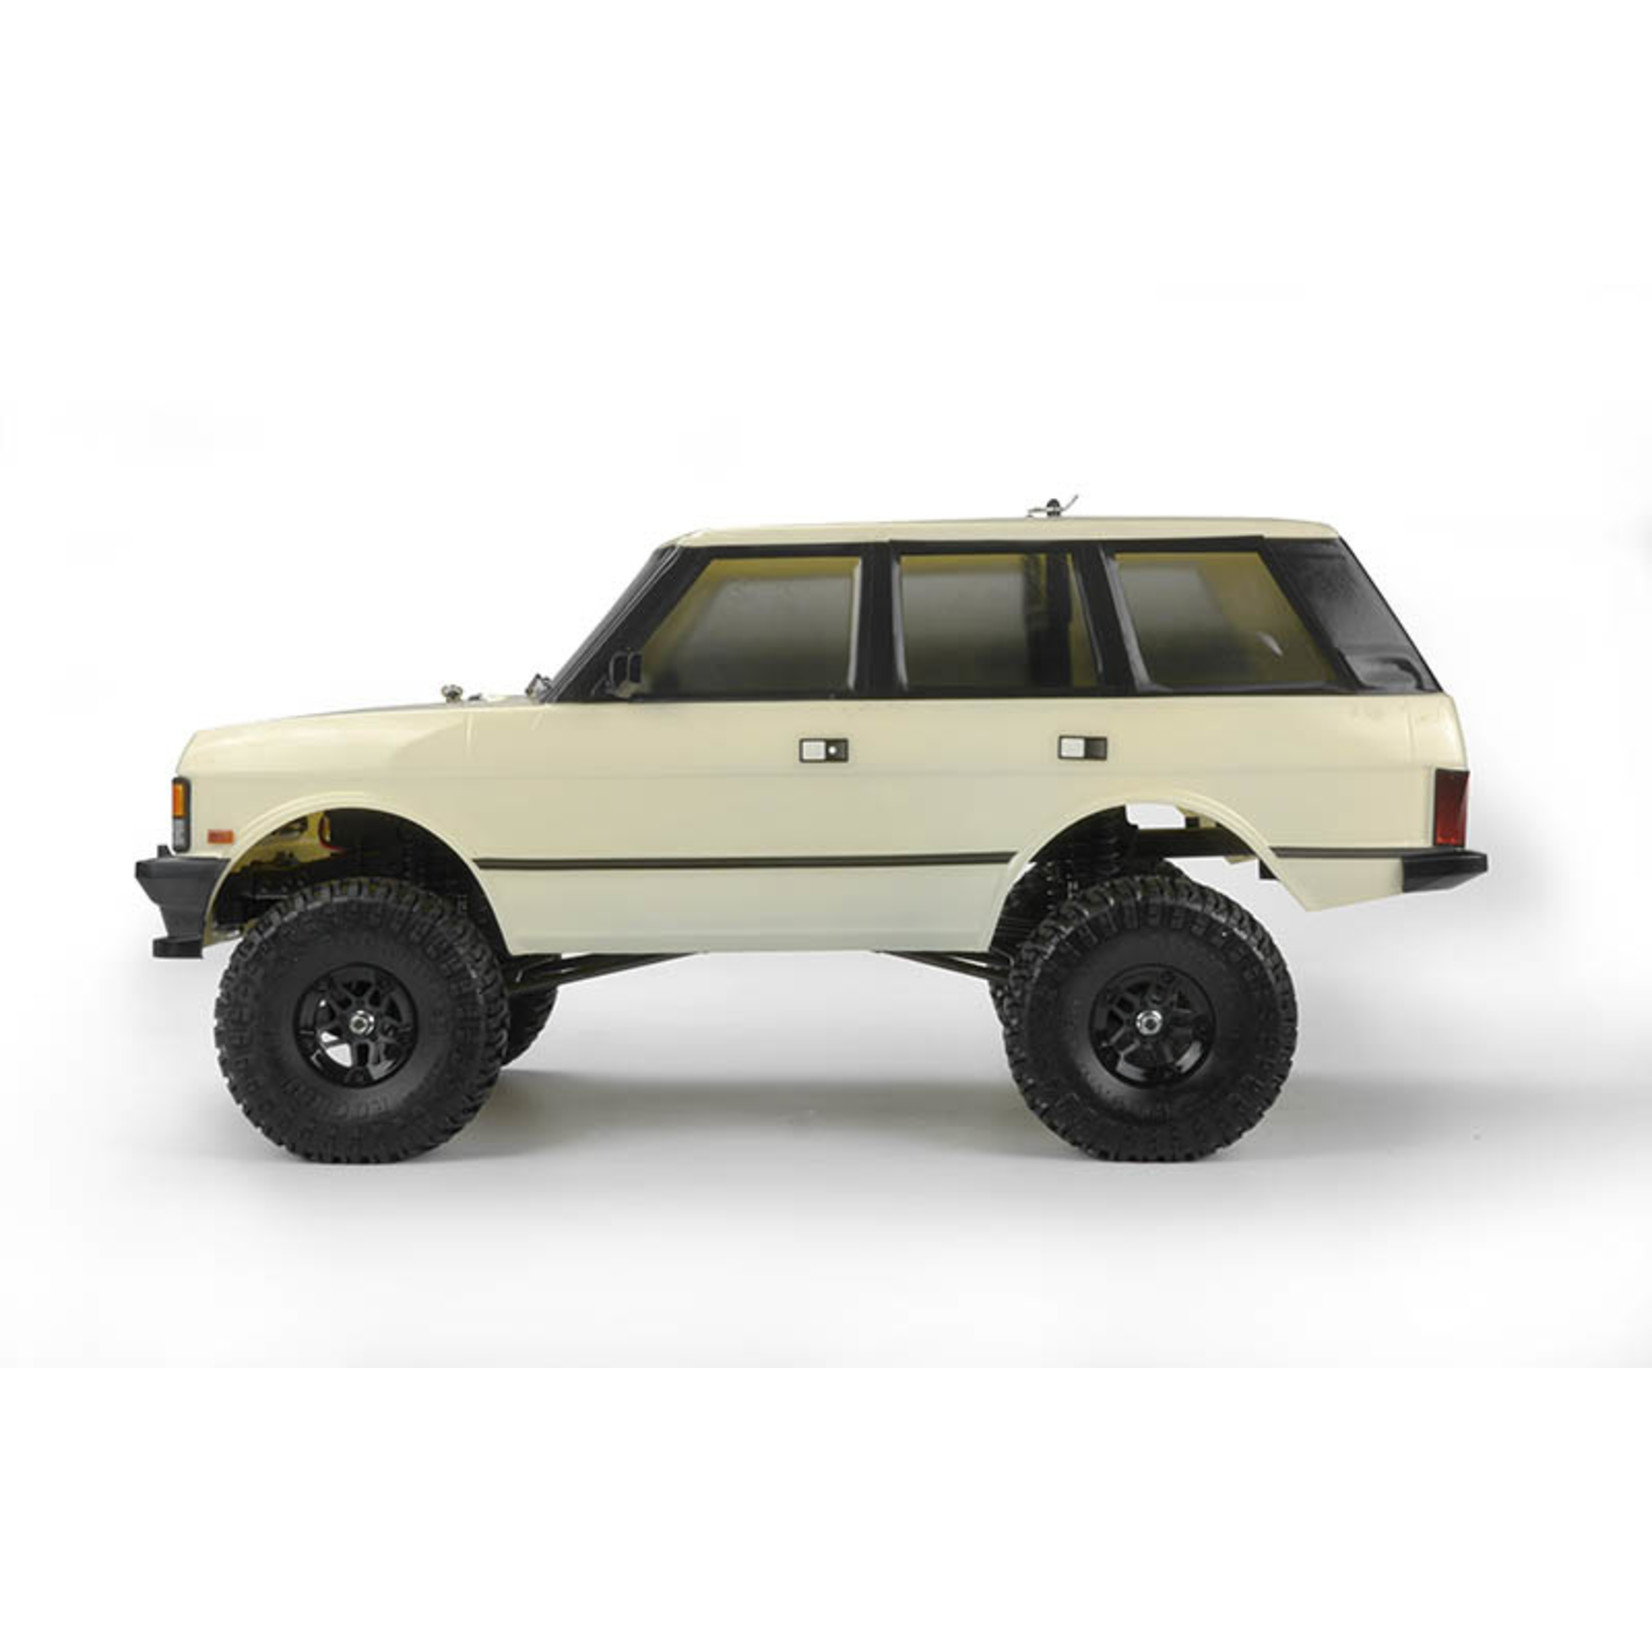 CARISMA SCA-1E 1/10 Scale '81 Range Rover 4WD Scaler, RTR